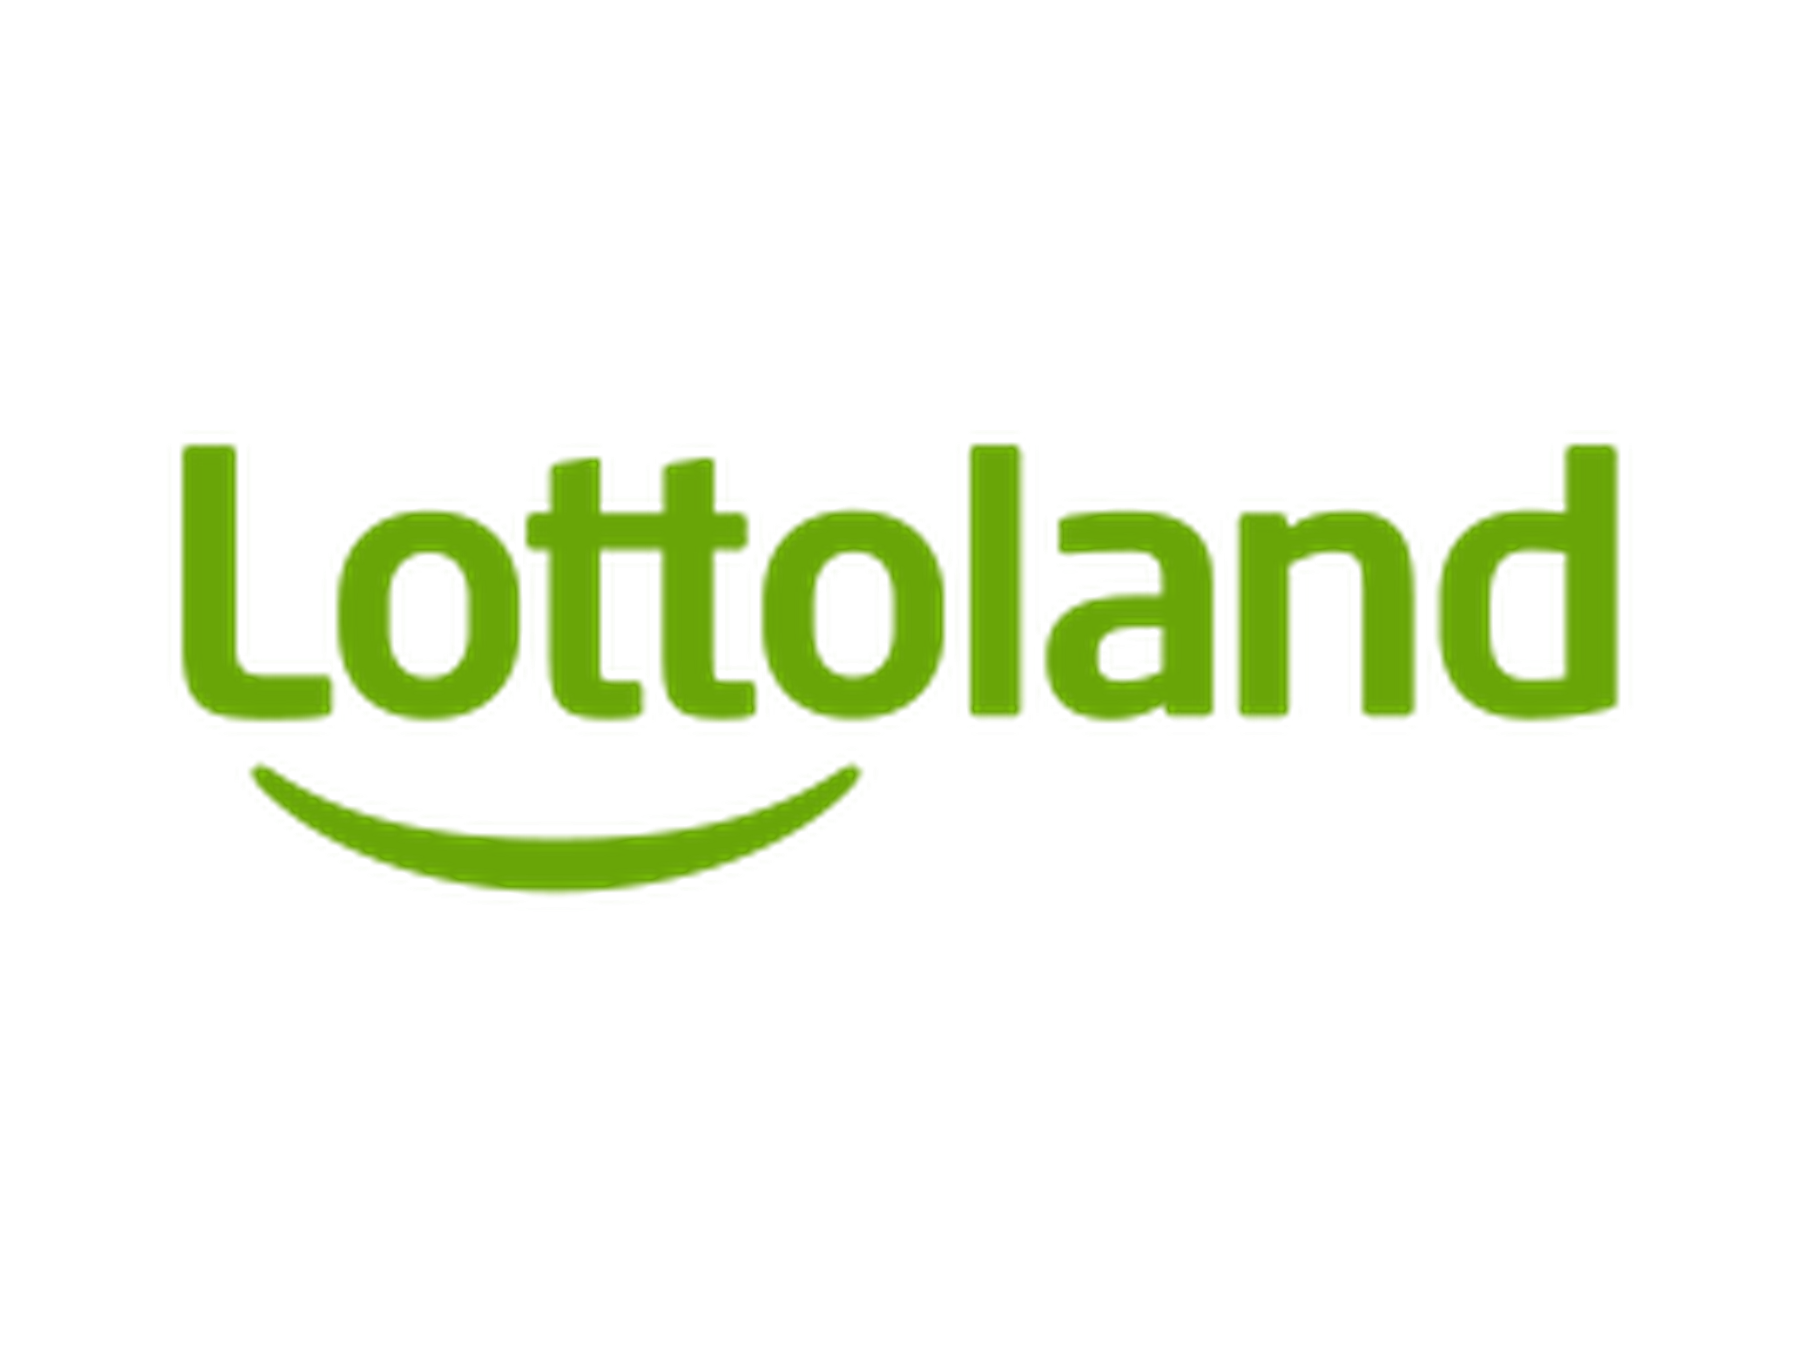 Código promocional Lottoland